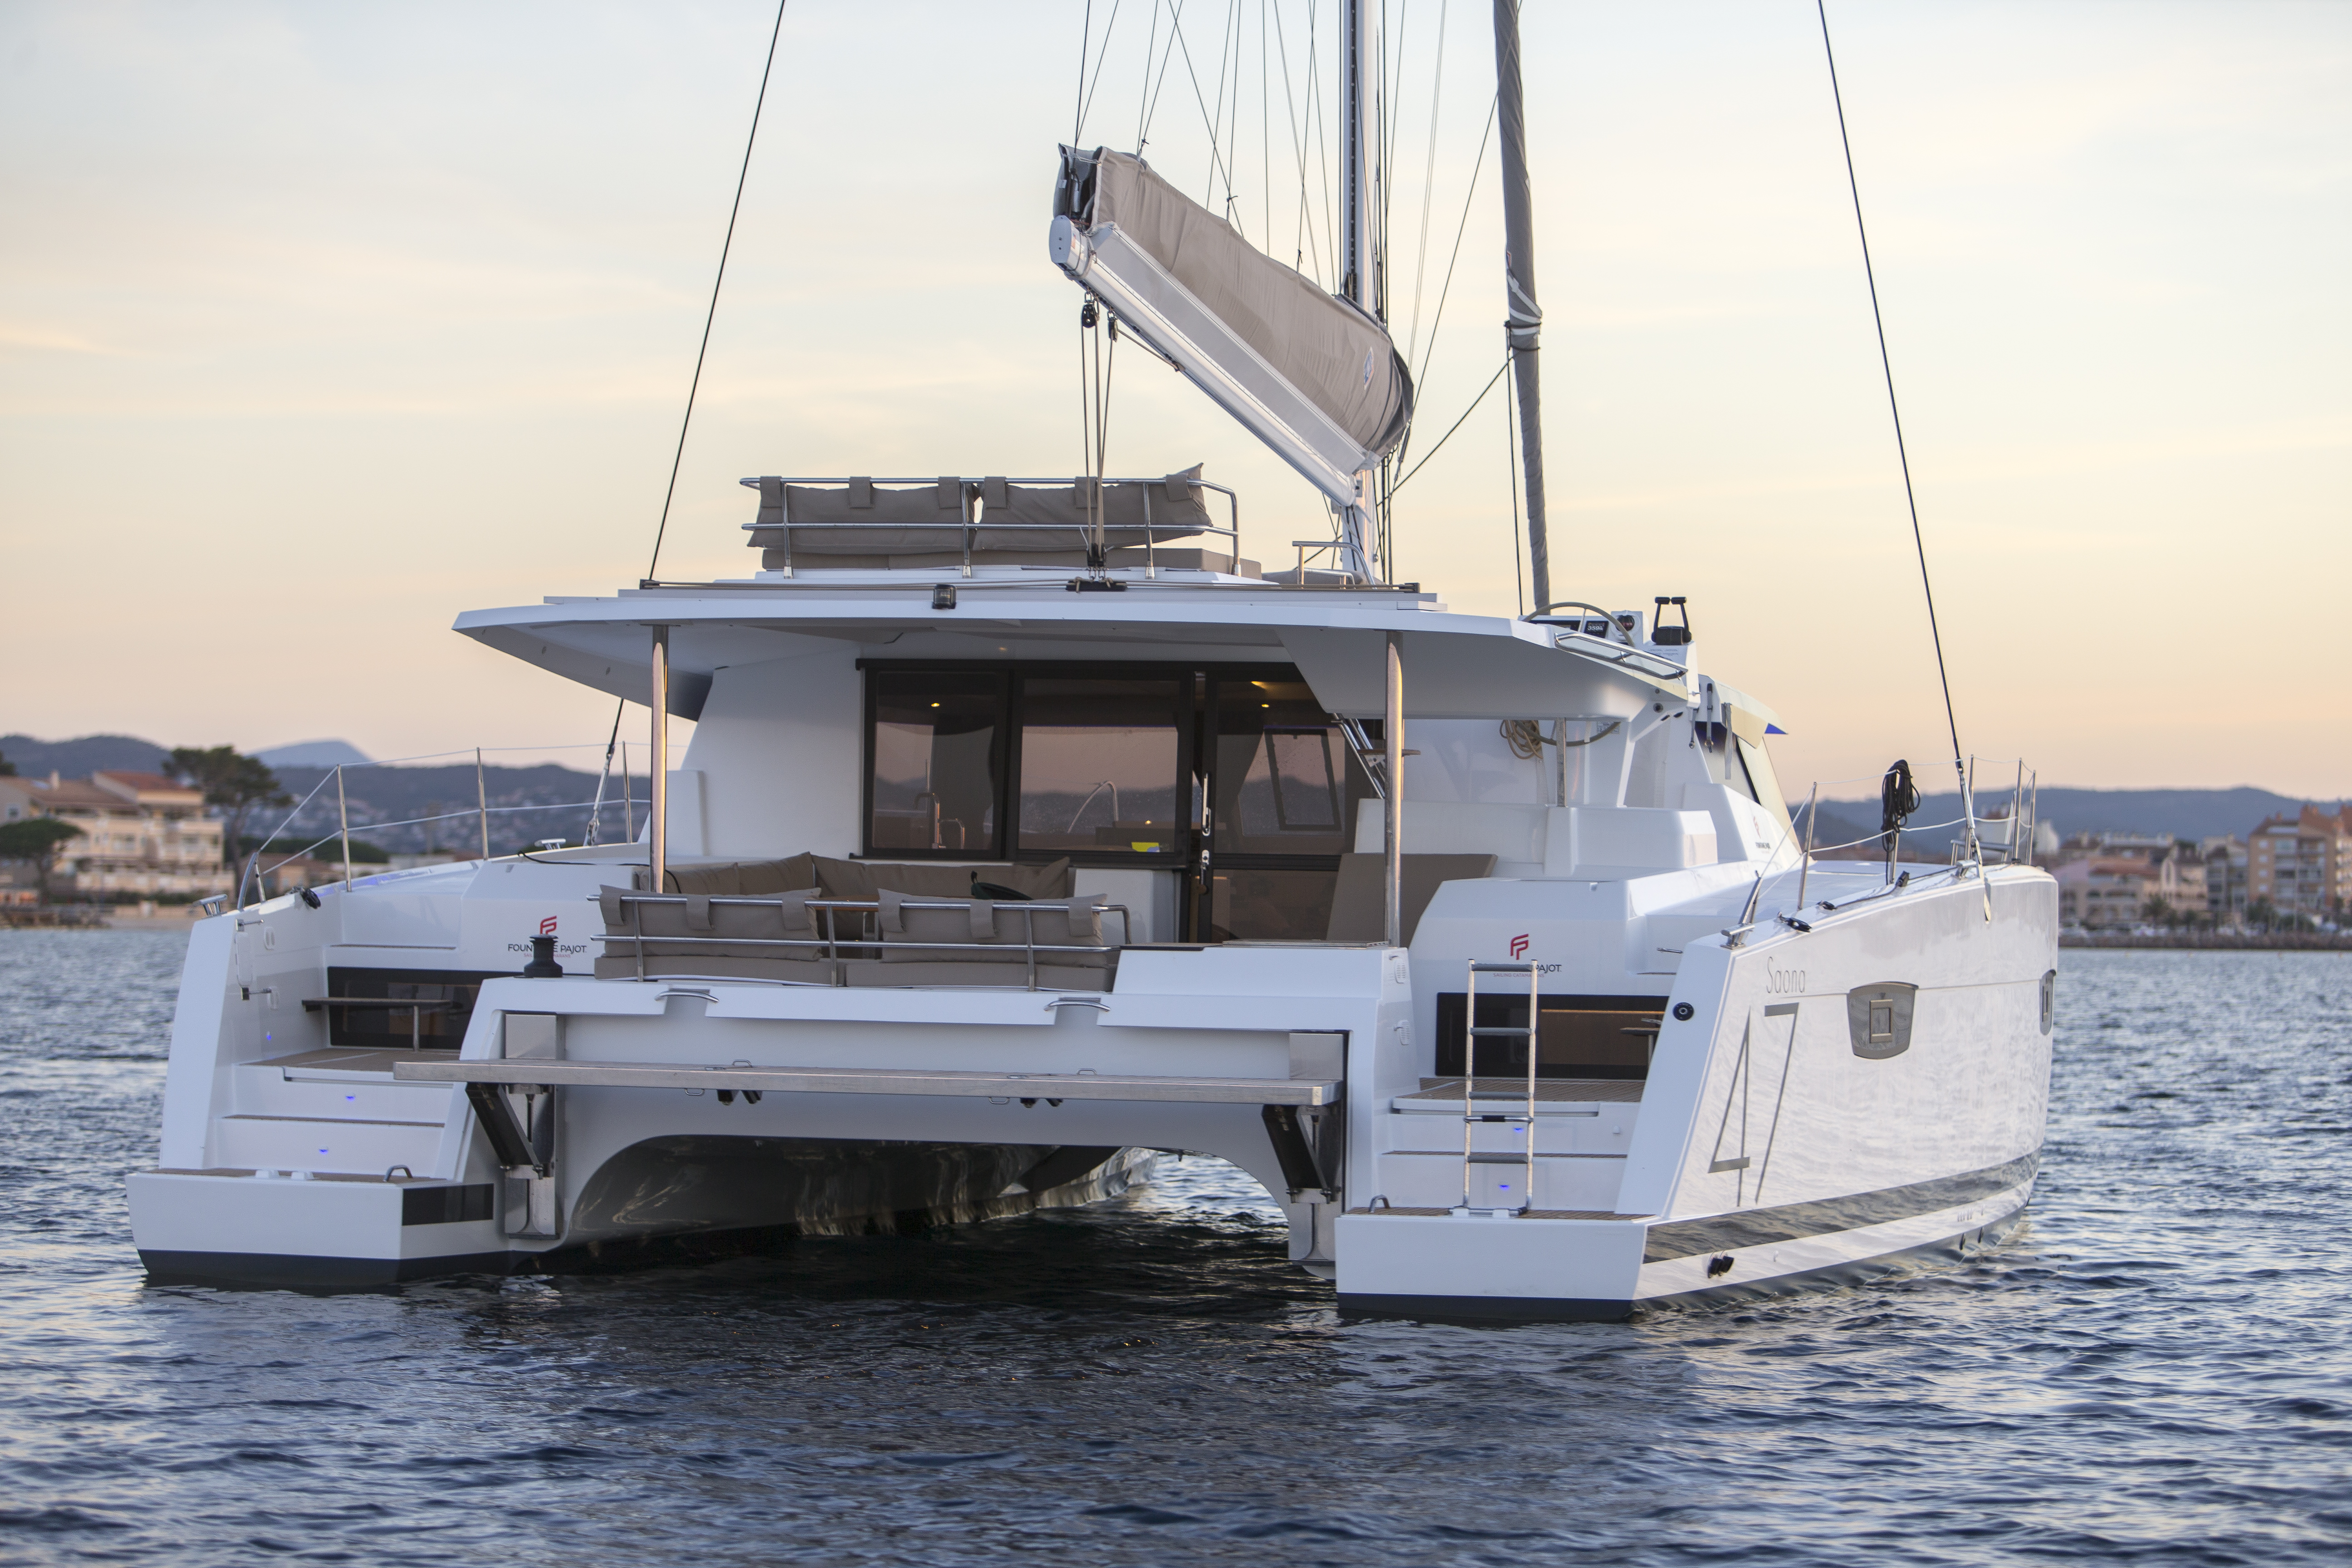 Saona 47 - Yacht Charter Pula & Boat hire in Croatia Istria and Kvarner Gulf Pula Pula Tehnomont Marina Veruda 4